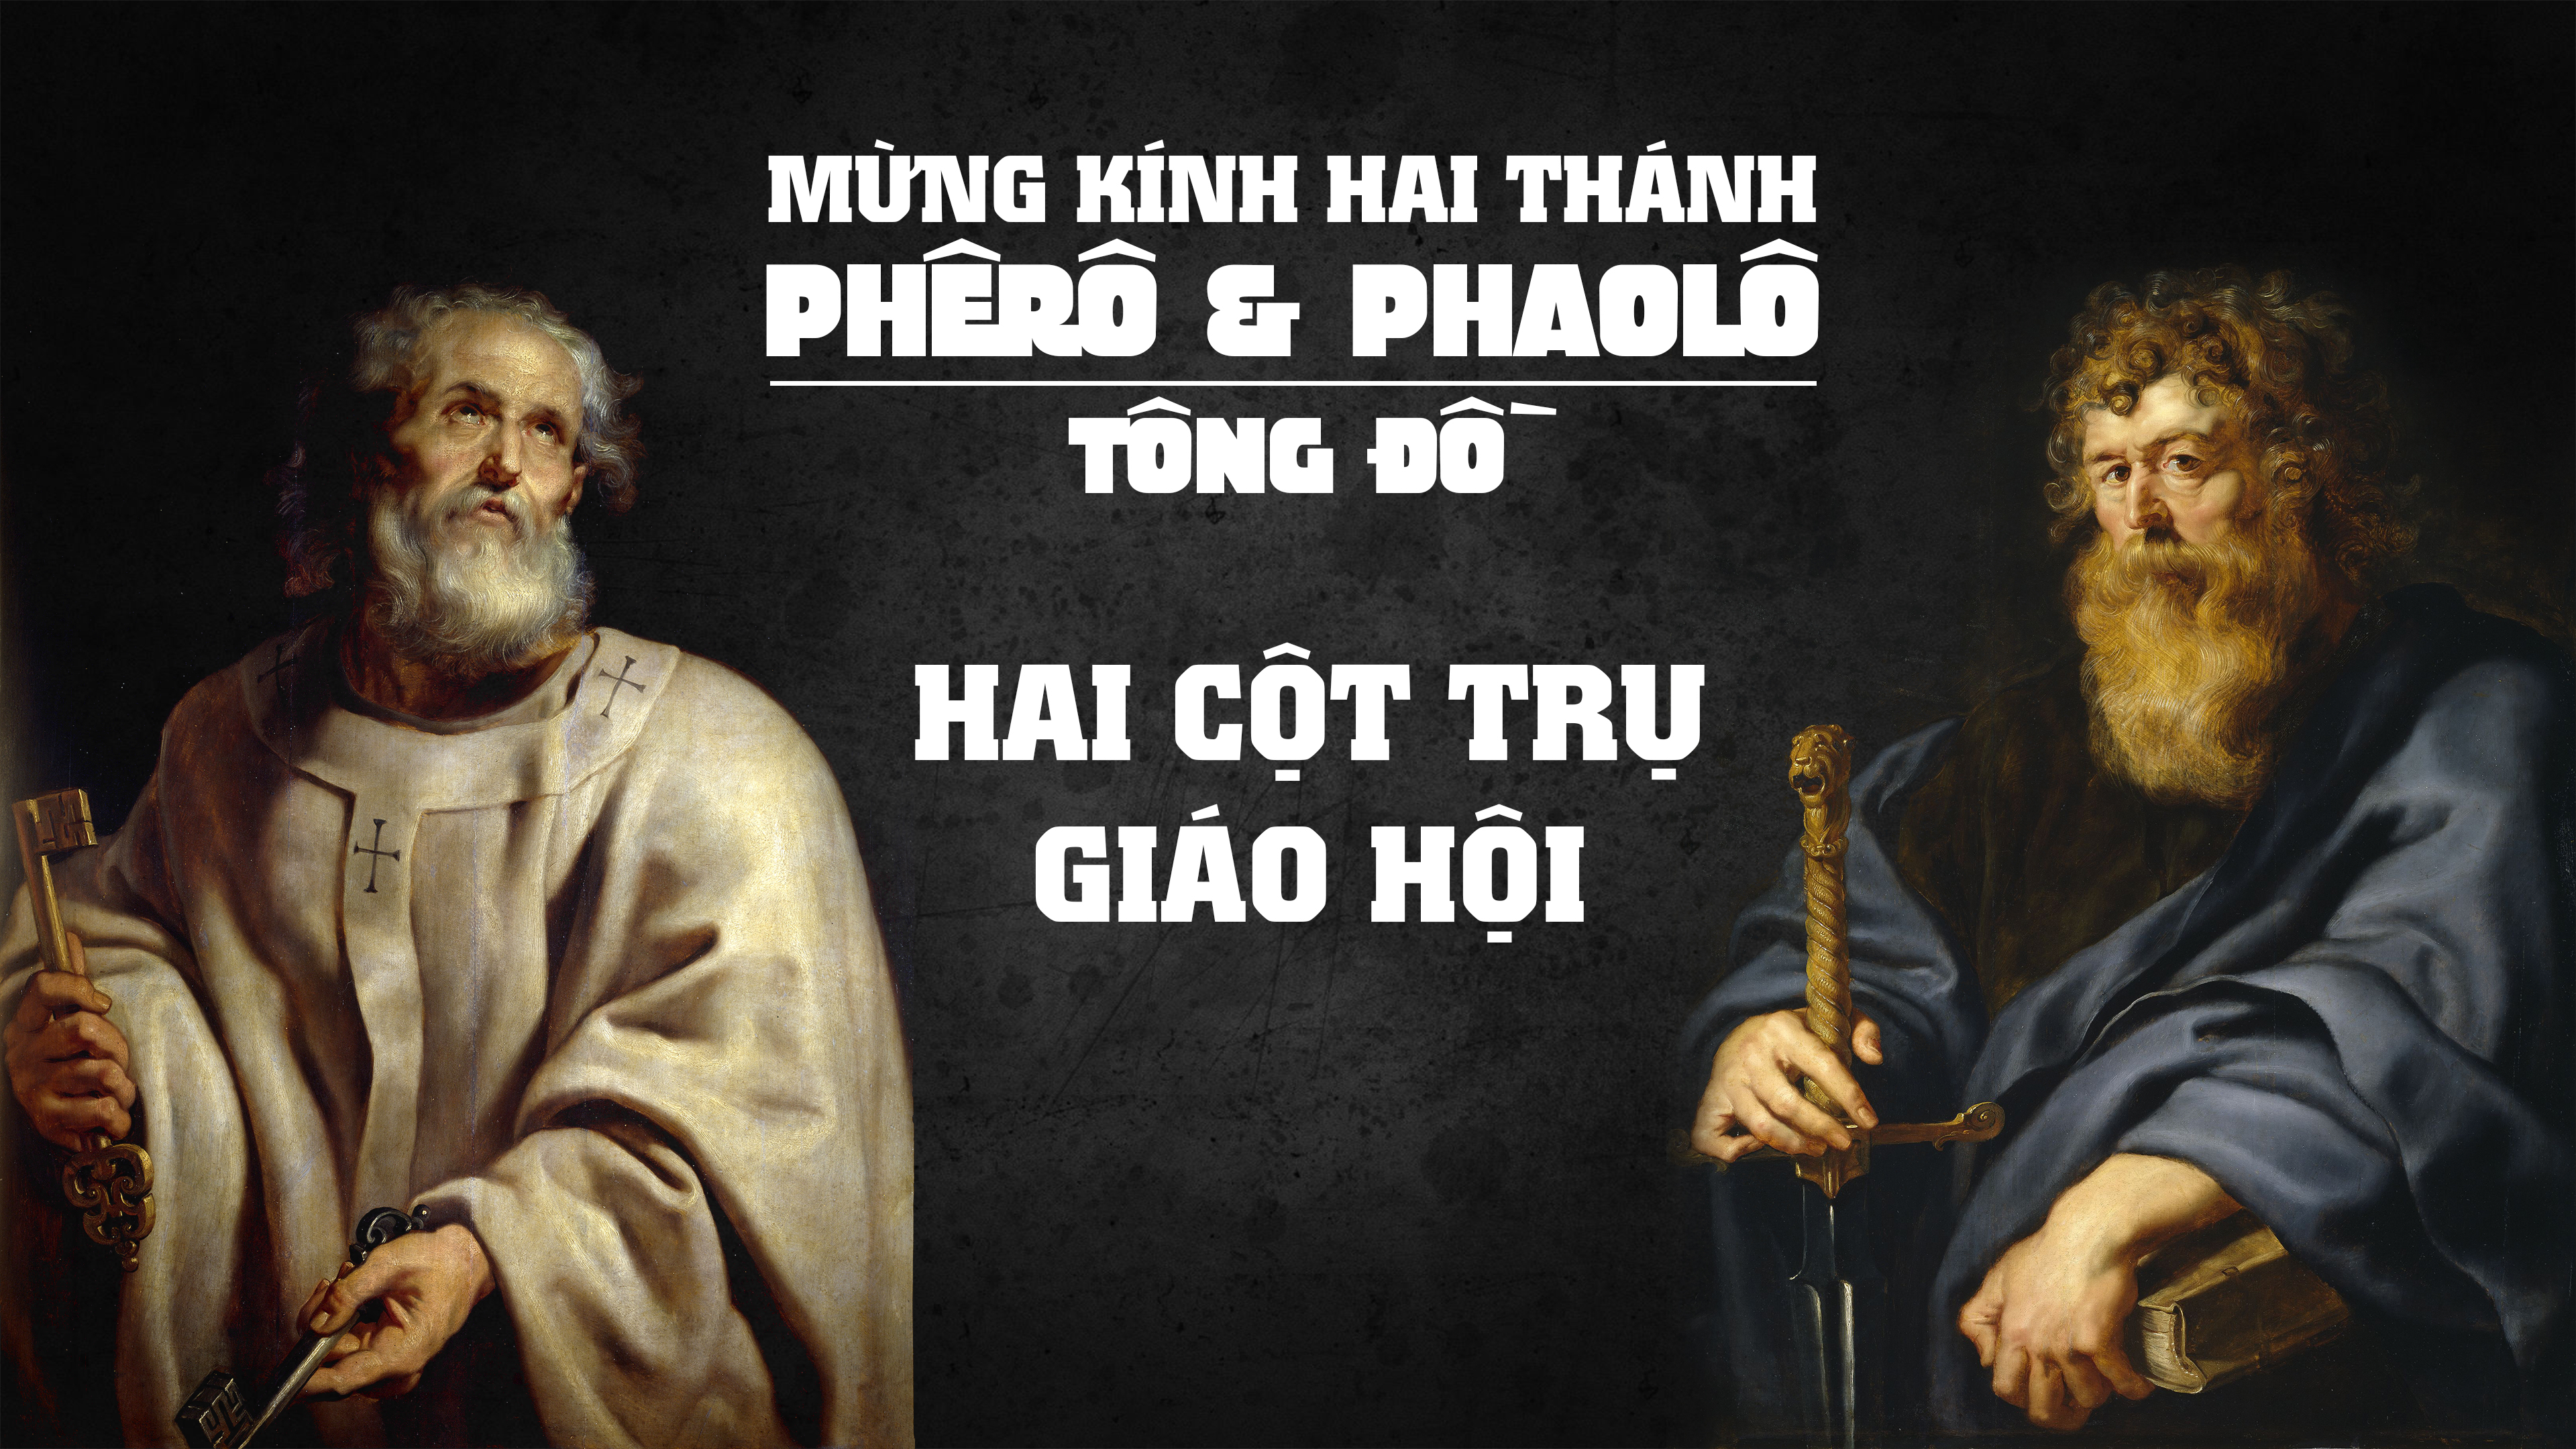 Ngày 29/06: Thánh Phêrô và thánh Phaolô, Tông đồ - Lễ trọng (Mt 16,13-19)